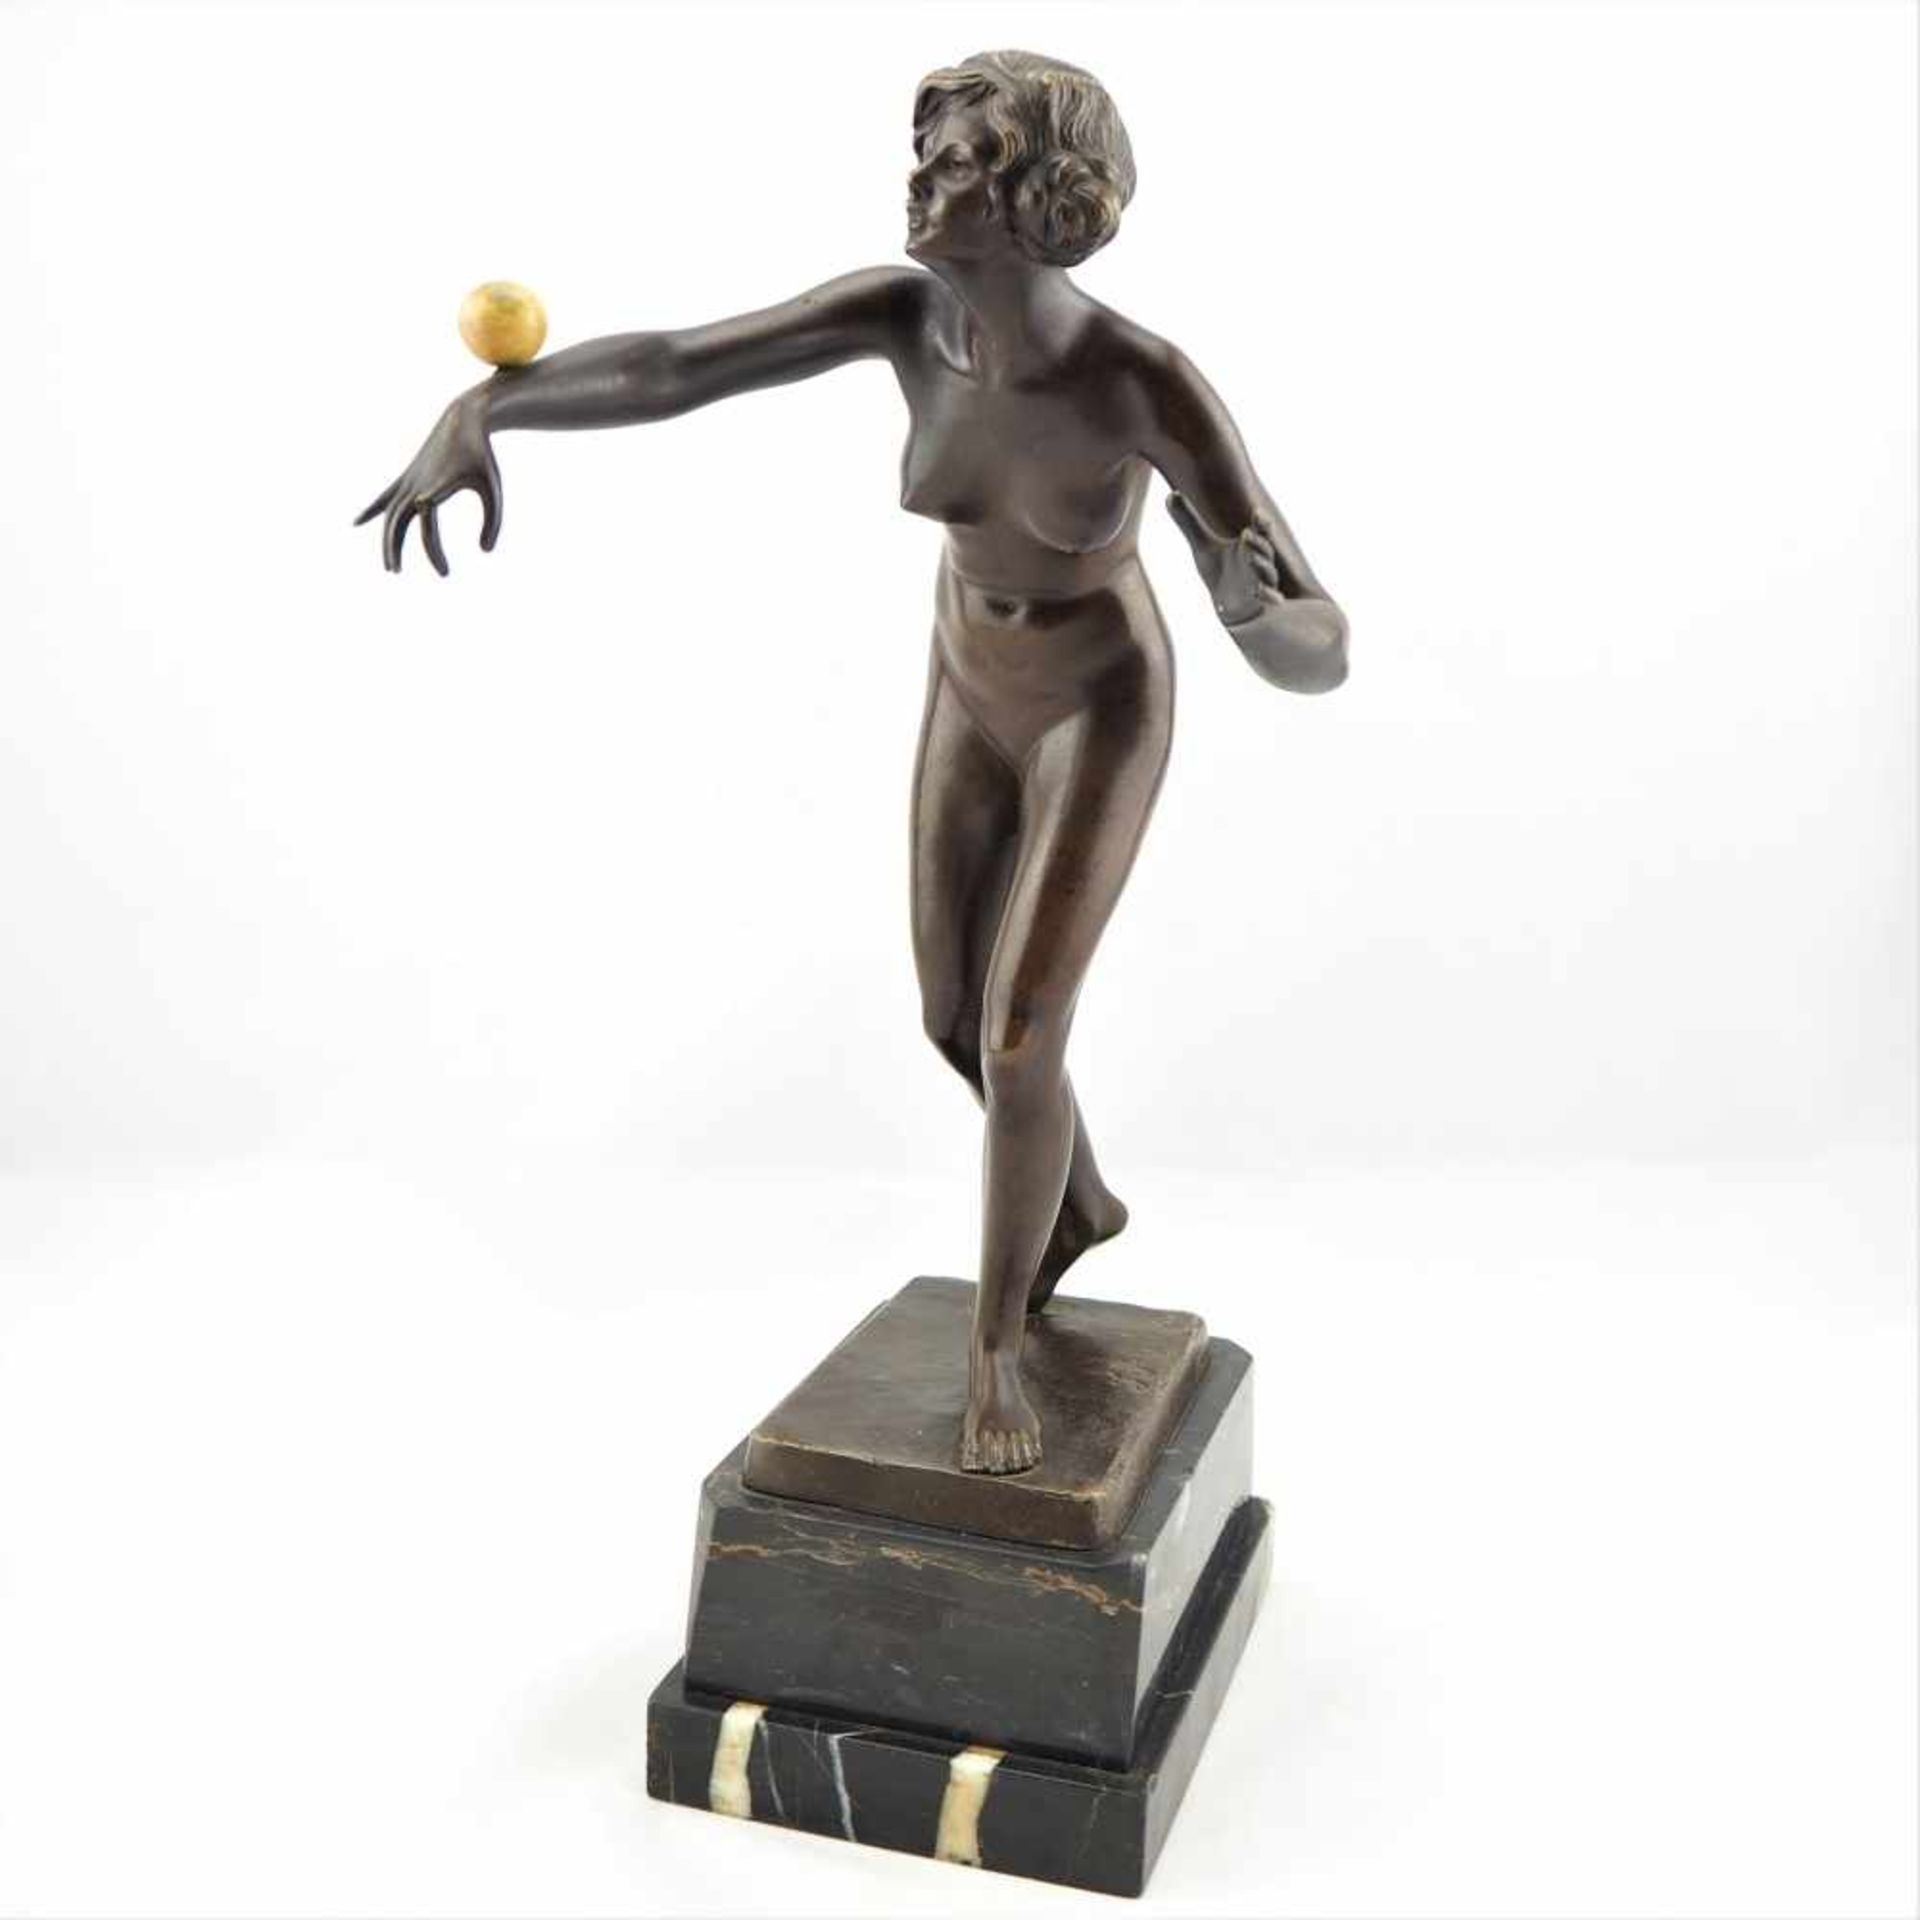 Skulptur Bronze "die Kugelspielerin" um 1900 von Gotthilf JaegerSehr gut ausgearbeitete Bronze